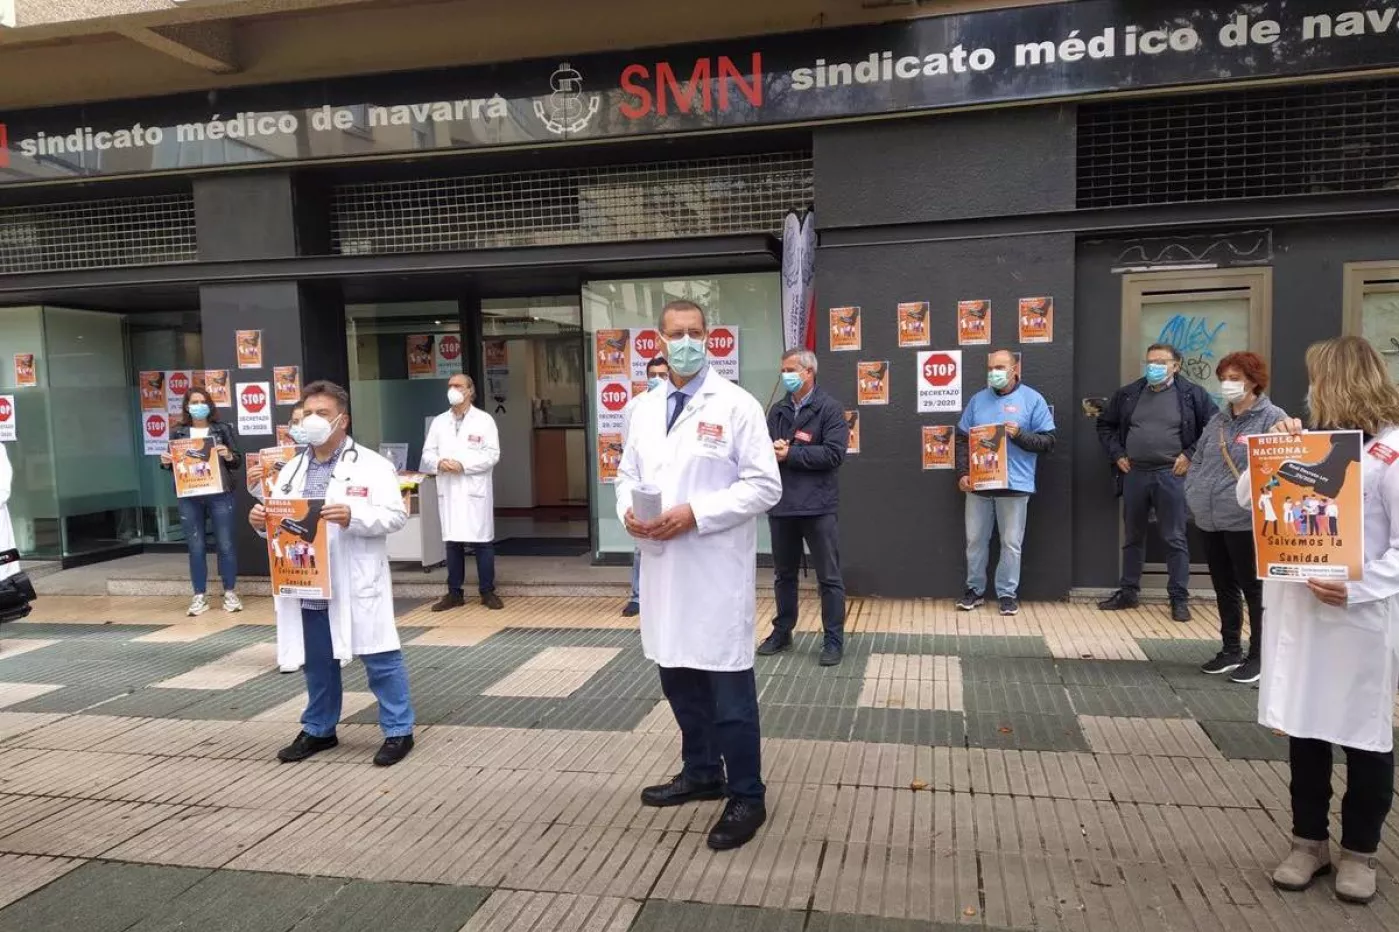 Aspecto de una concentración frente a la sede del Sindicato Médico de Navarra durante una huelga médica convocada por CESM en toda España. Foto: SMN.